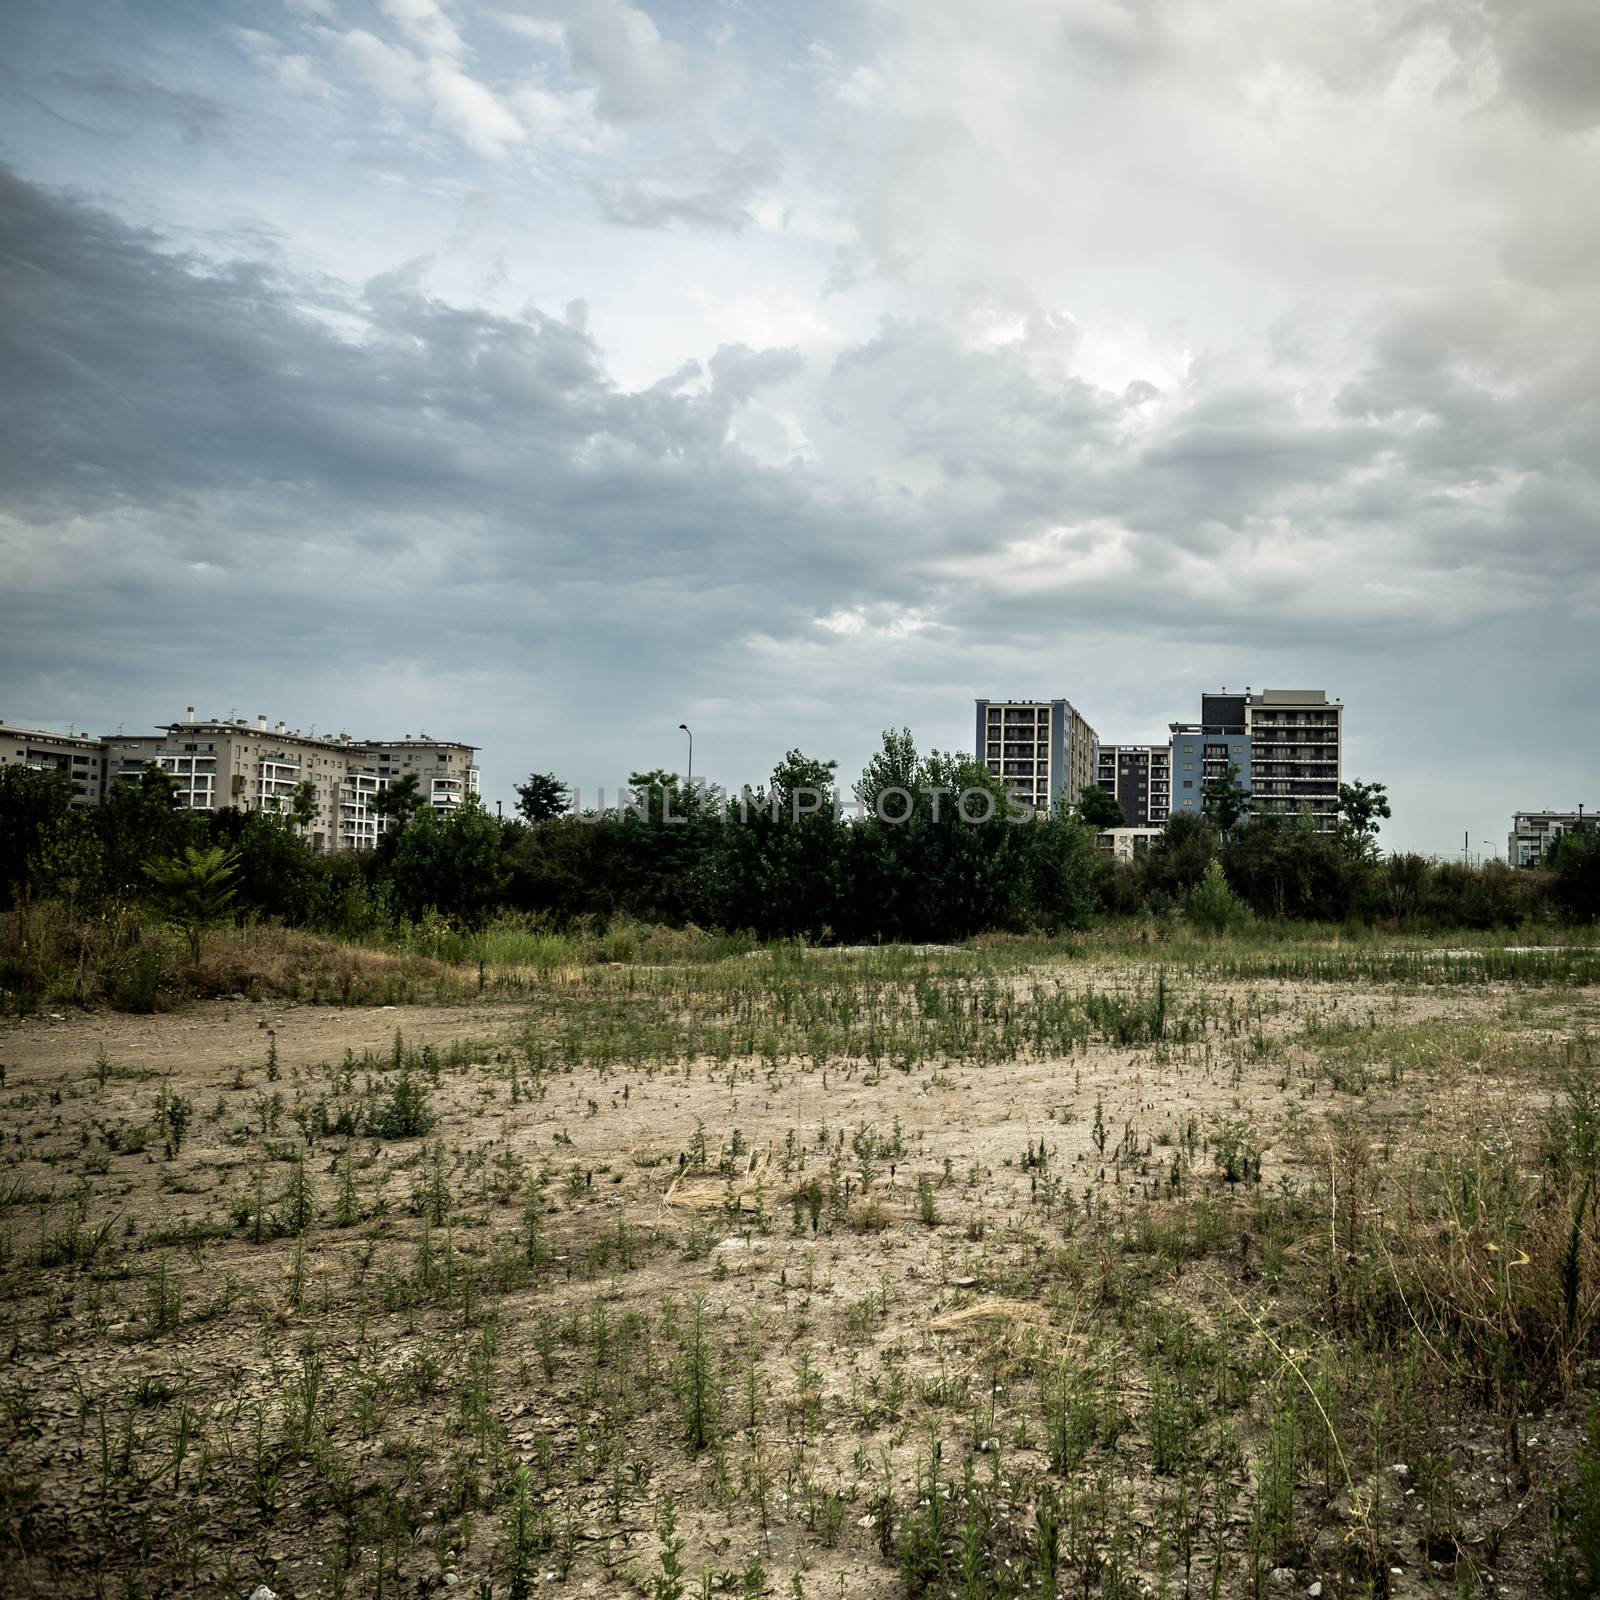 desolate suburb landscape by peus